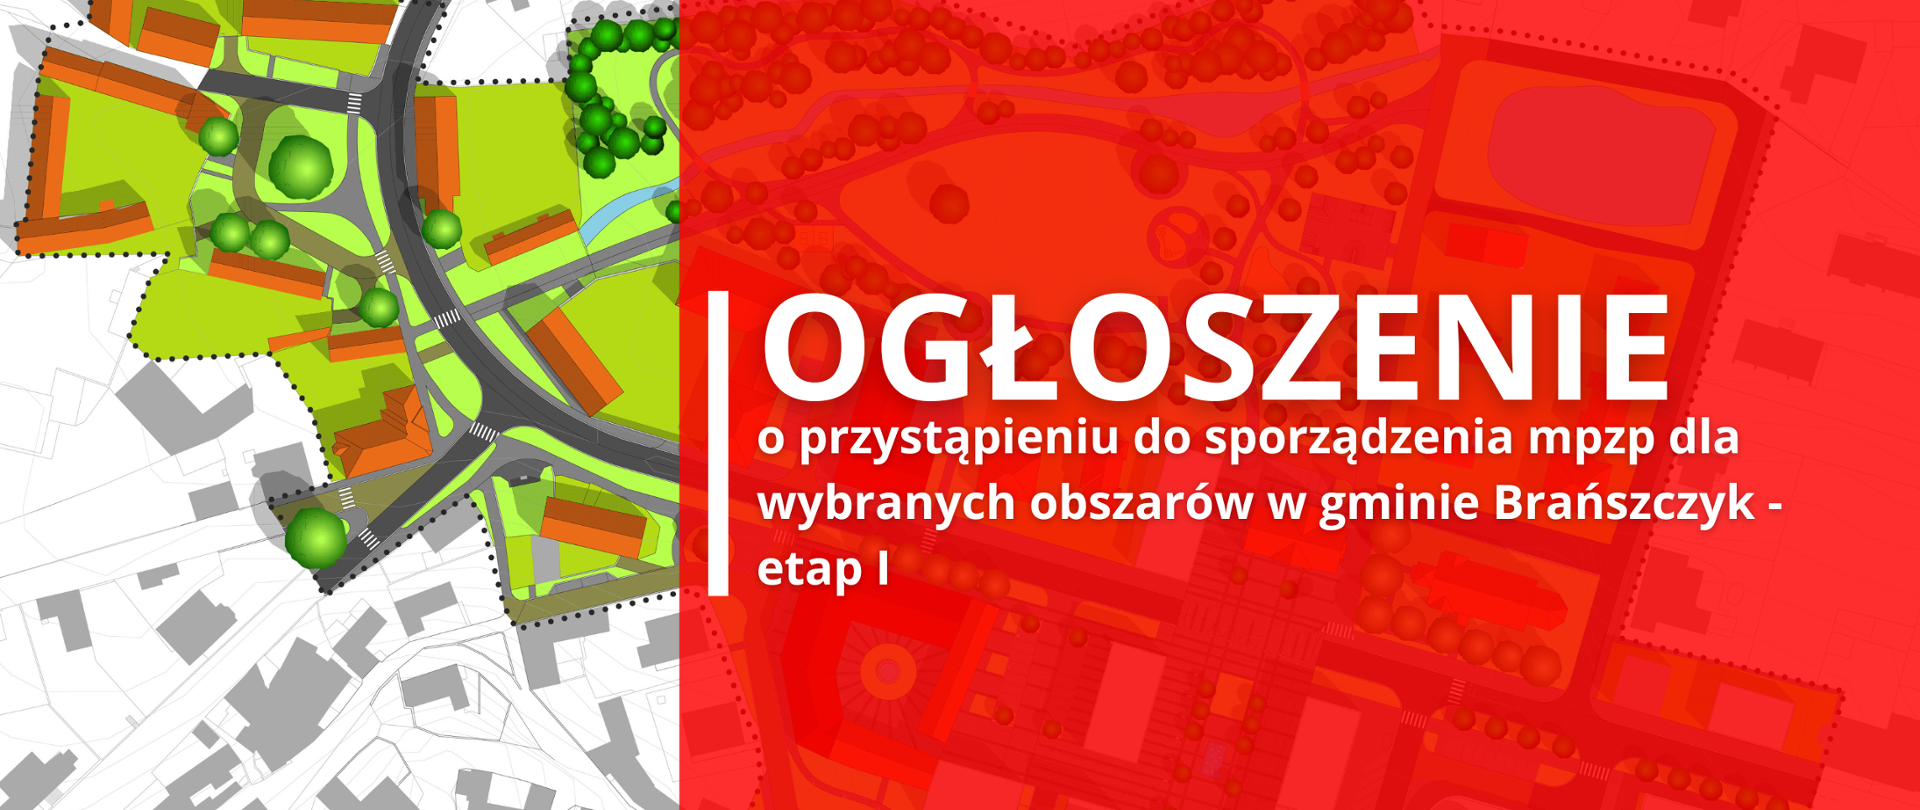 W tle mapa miasta, na pierwszym planie czerwony prostokąt i tekst: "OGŁOSZENIE o przystąpieniu do sporządzenia mpzp dla wybranych obszarów w gminie Brańszczyk - etap I